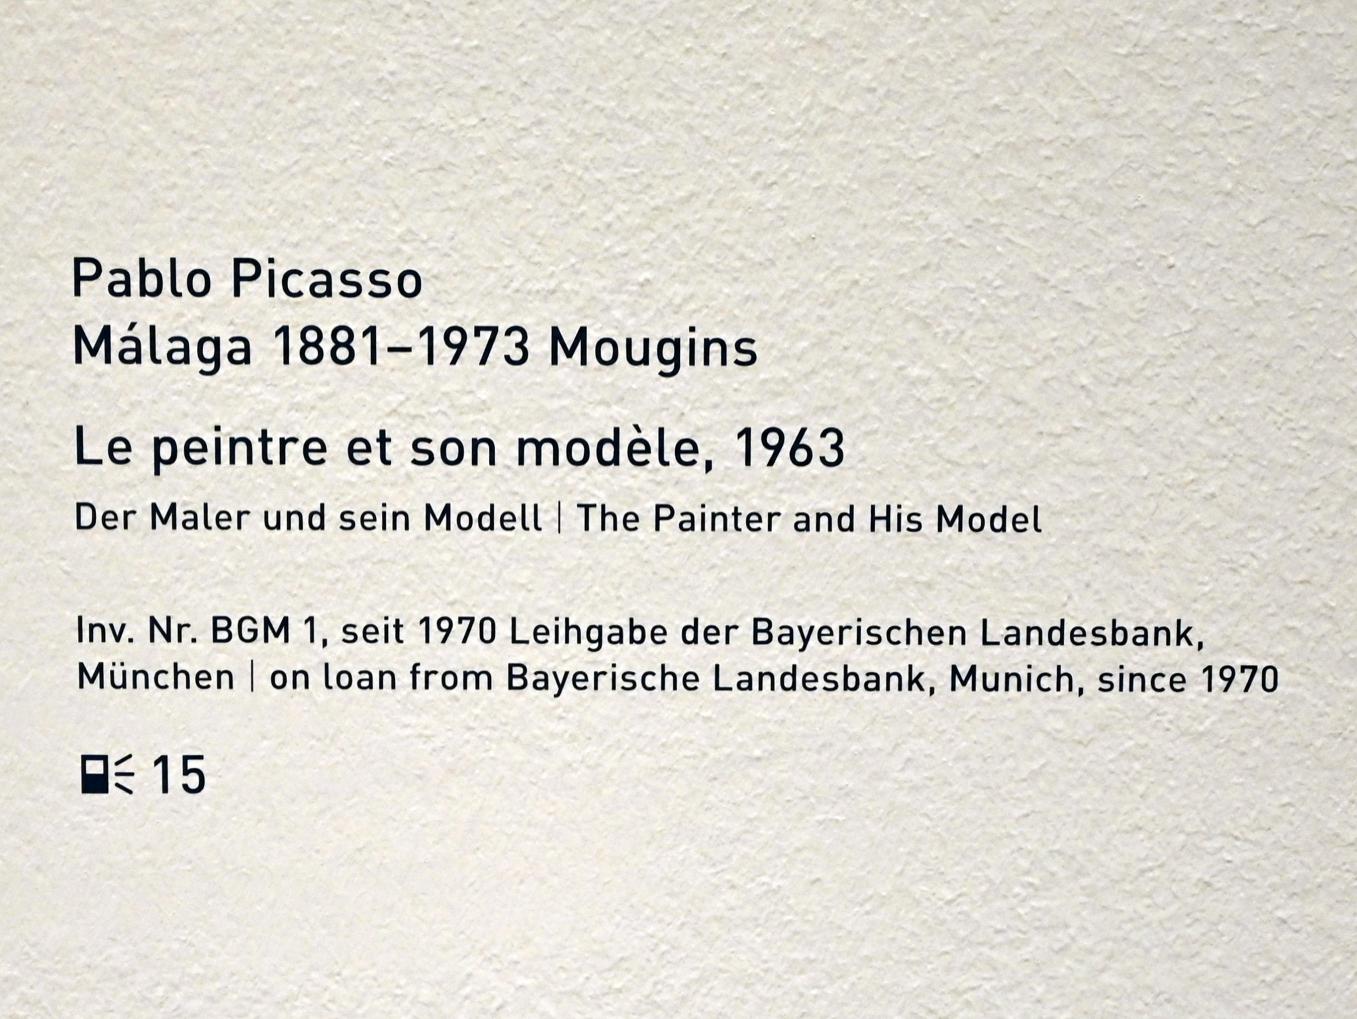 Pablo Picasso (1897–1972), Le peintre et son modèle - Der Maler und sein Modell, München, Pinakothek der Moderne, Saal 6, 1963, Bild 2/2